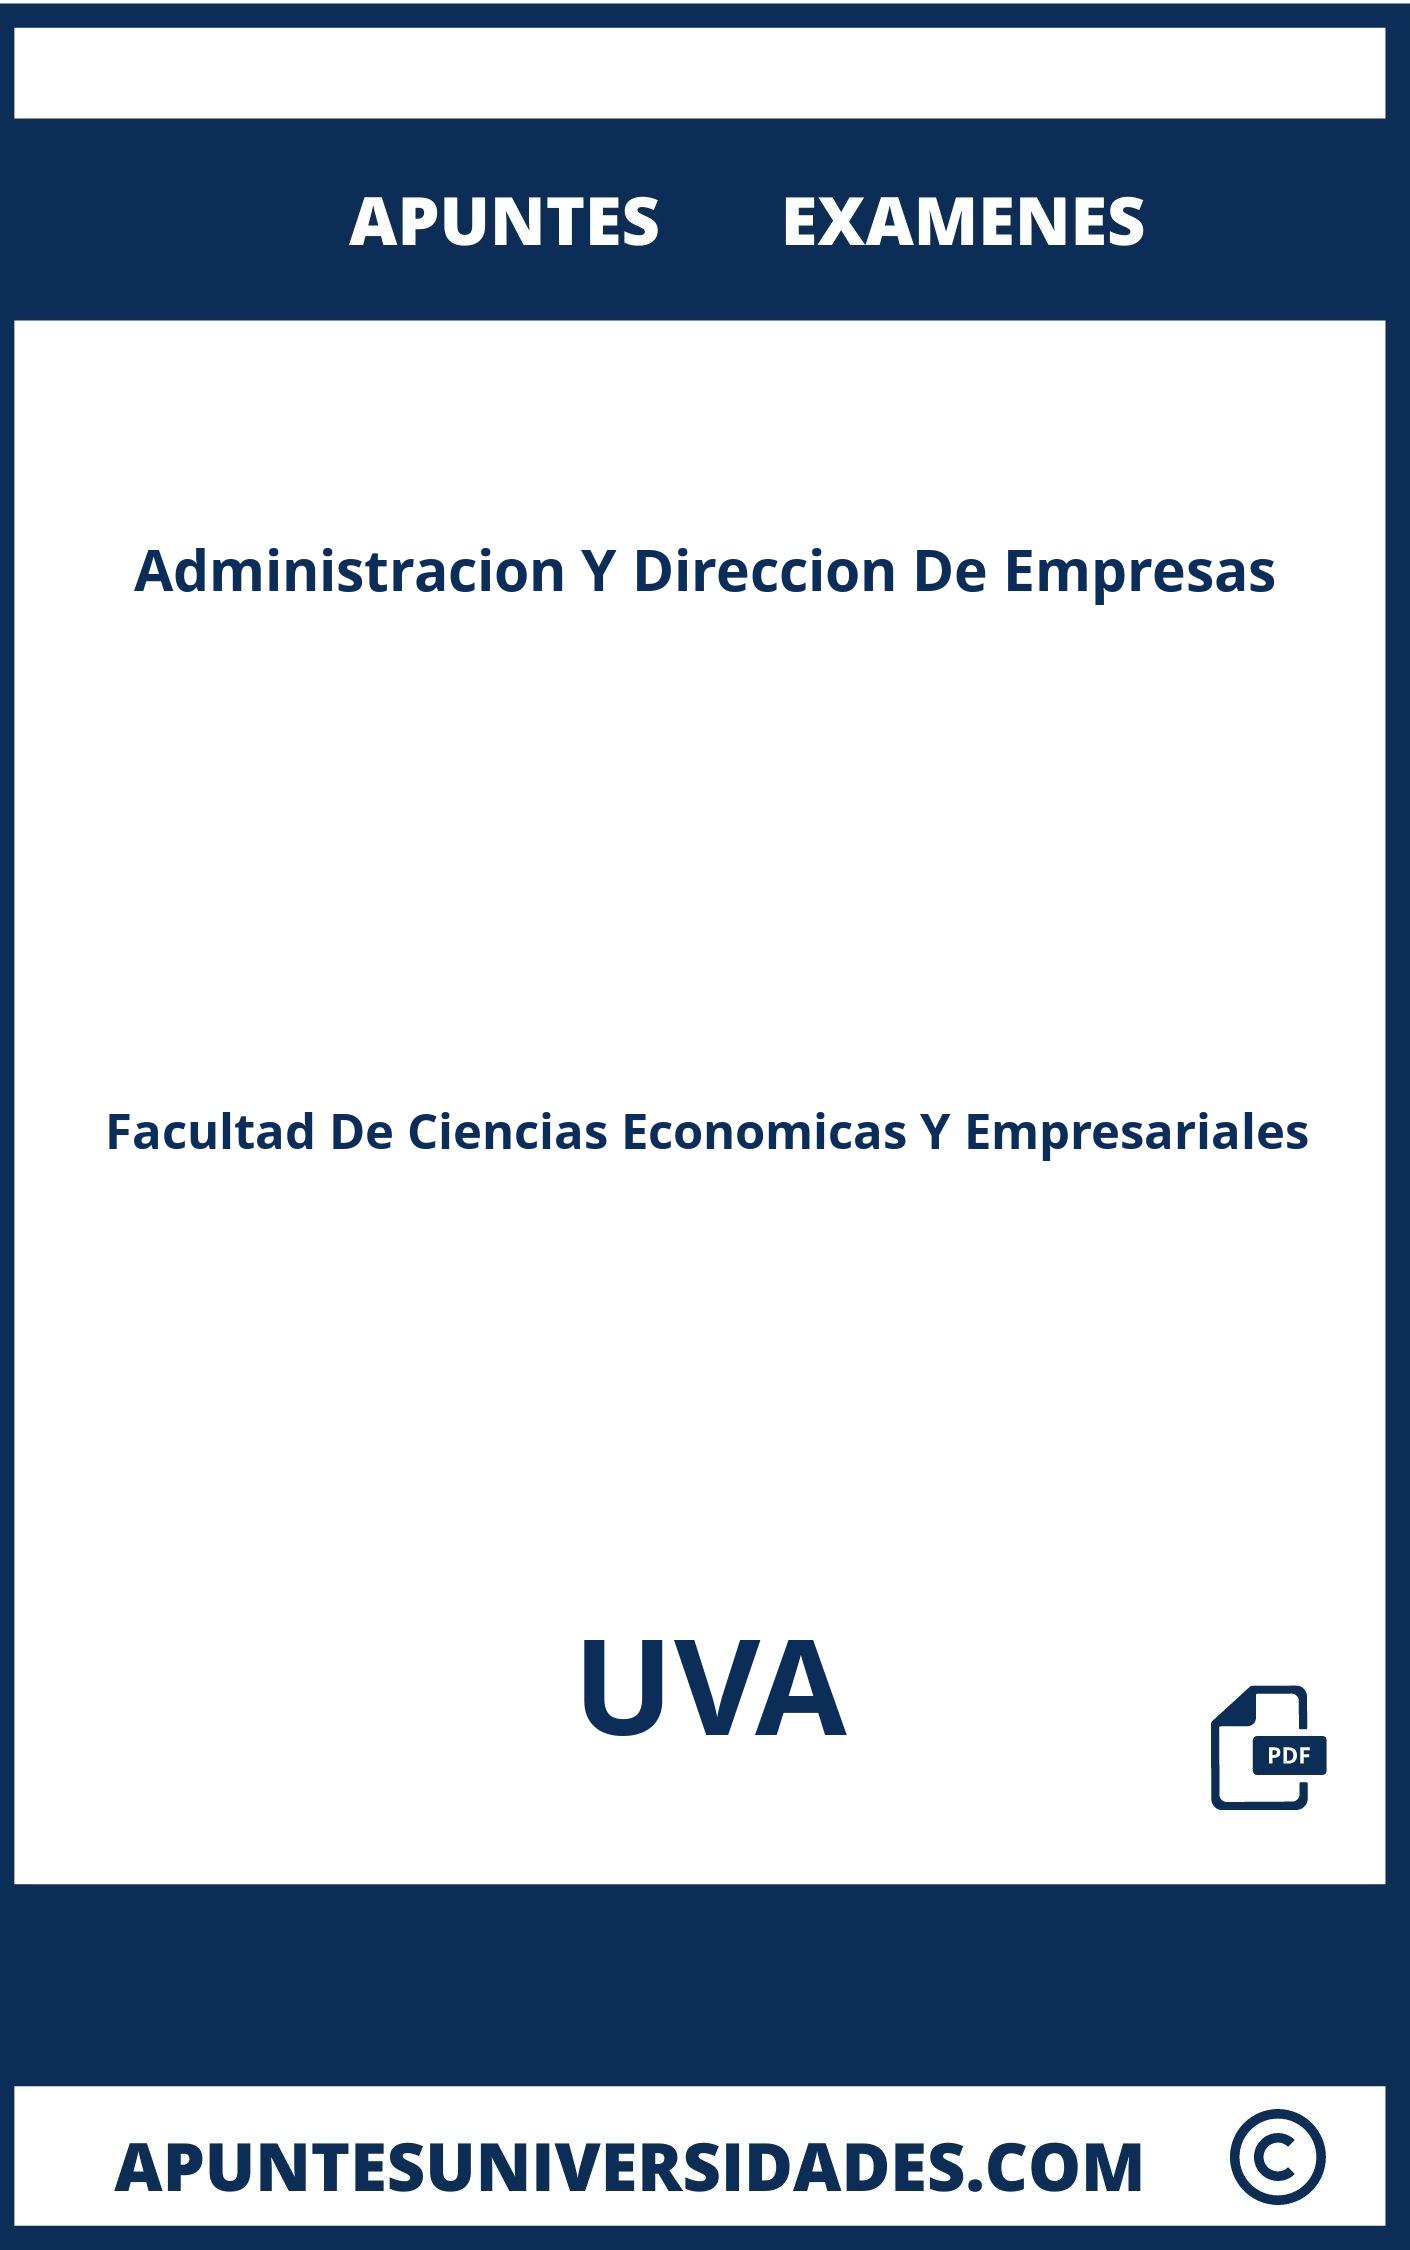 Administracion Y Direccion De Empresas UVA Examenes Apuntes